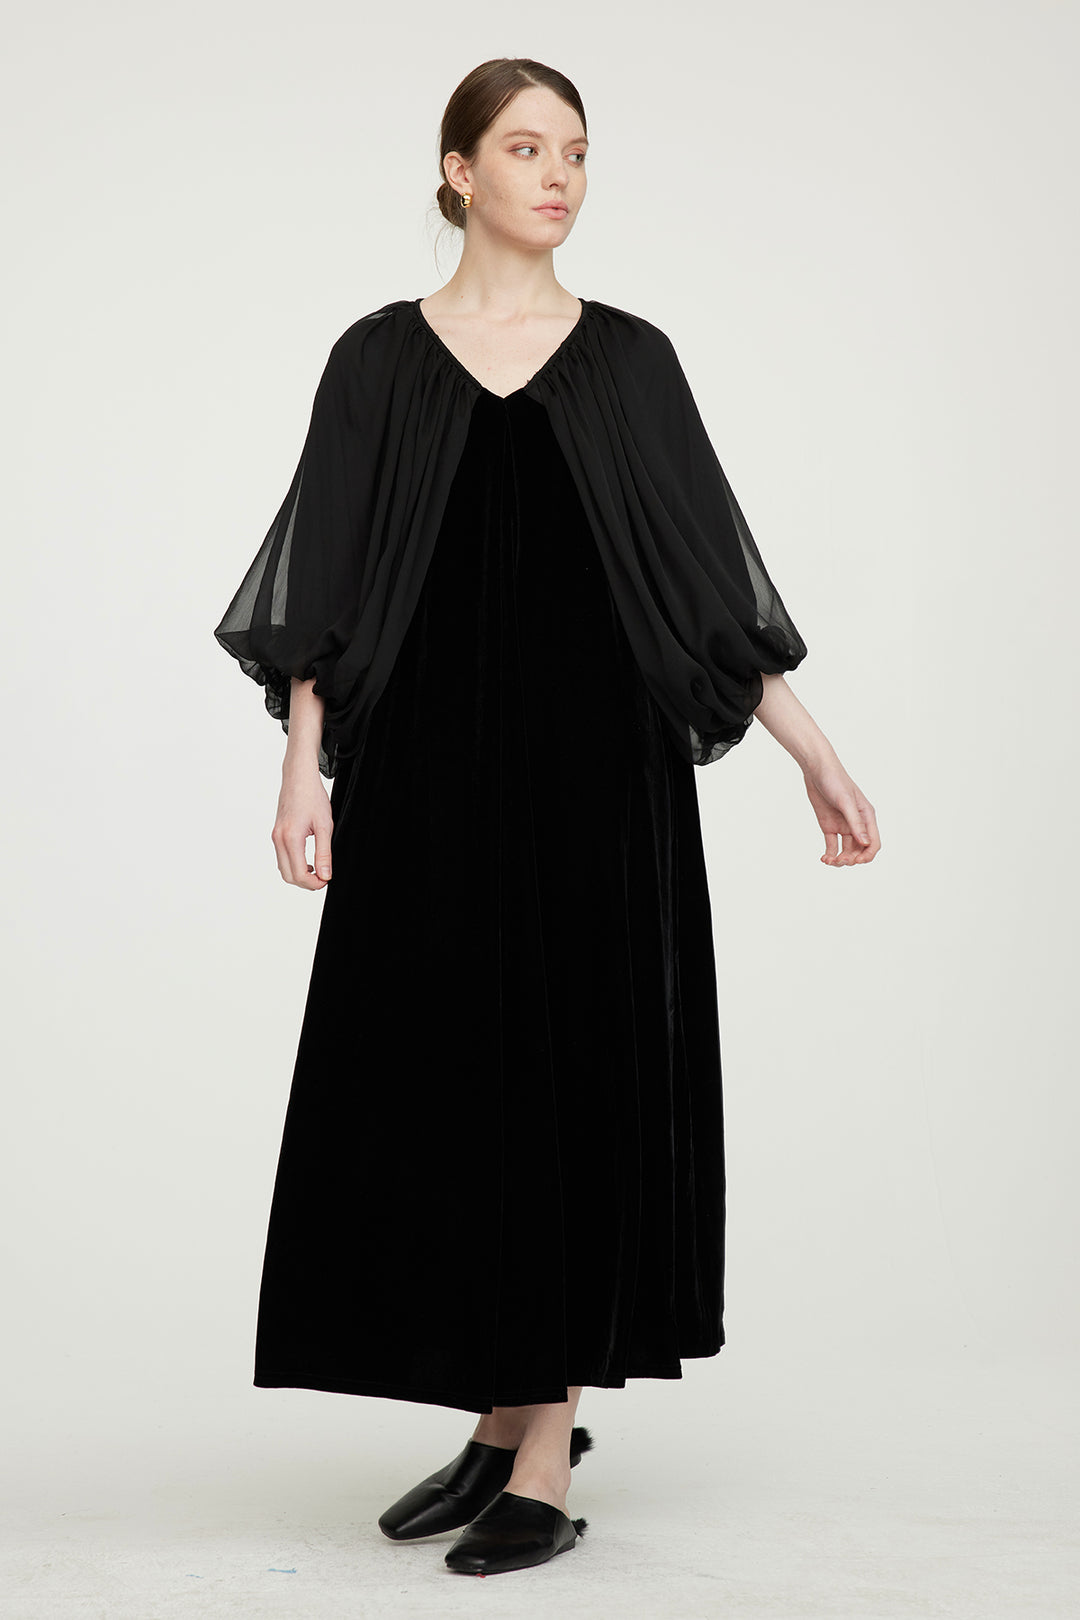 Casette Mesh Sleeve V-Neck Elegant Velvet Dress